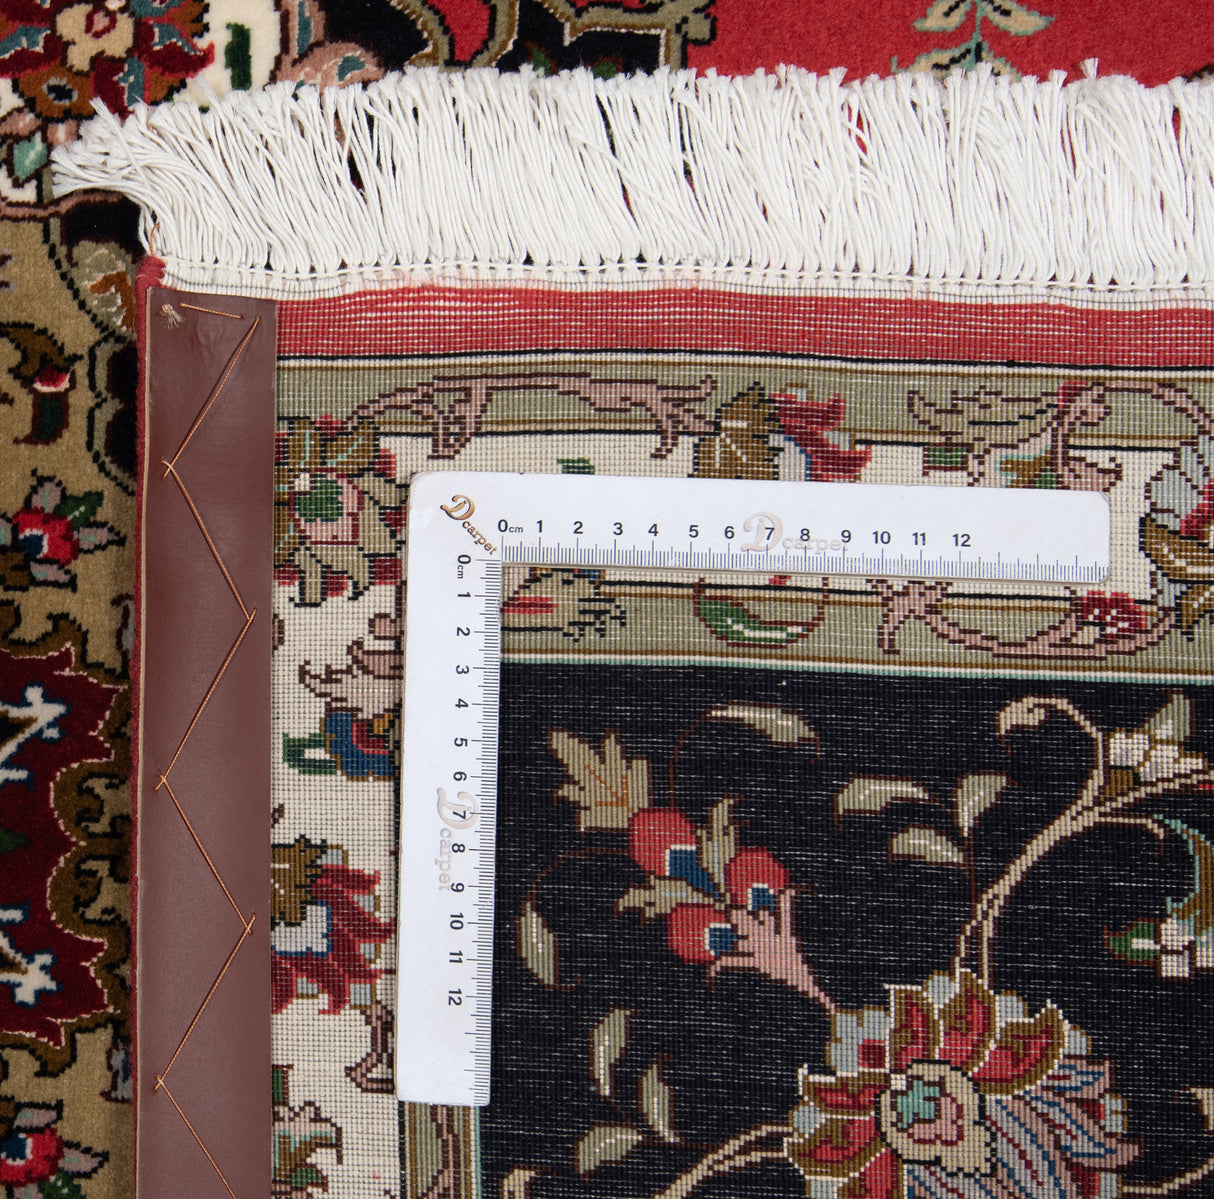 Carpetes persas Tabriz 50Raj | 262 x 205 cm